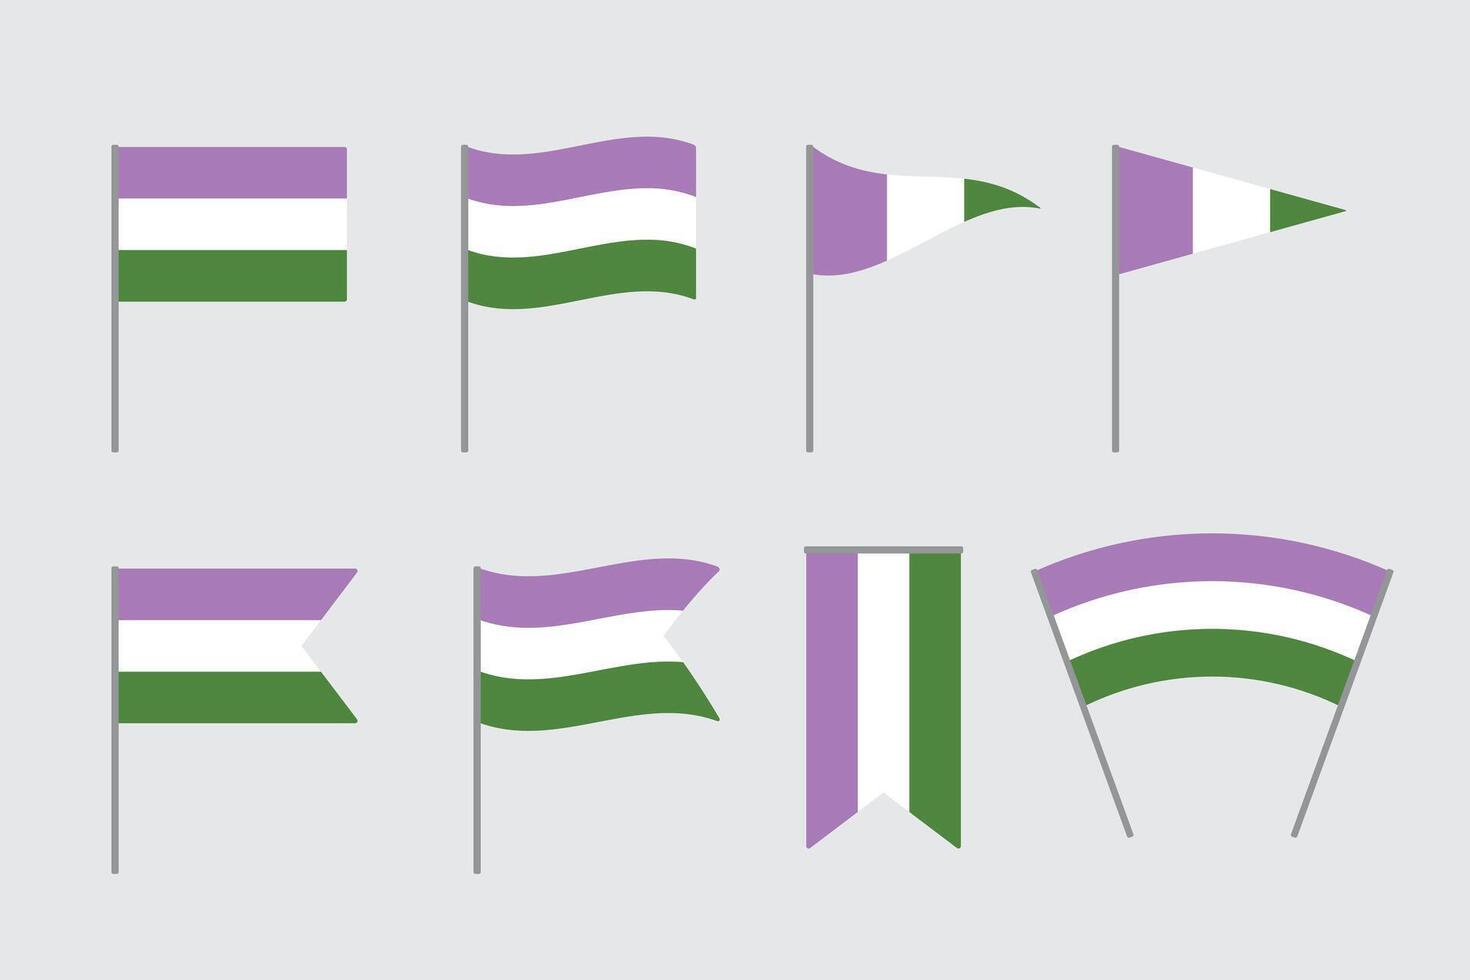 púrpura, blanco, y verde de colores género queer banderas lgbtqi concepto. plano vector ilustración.